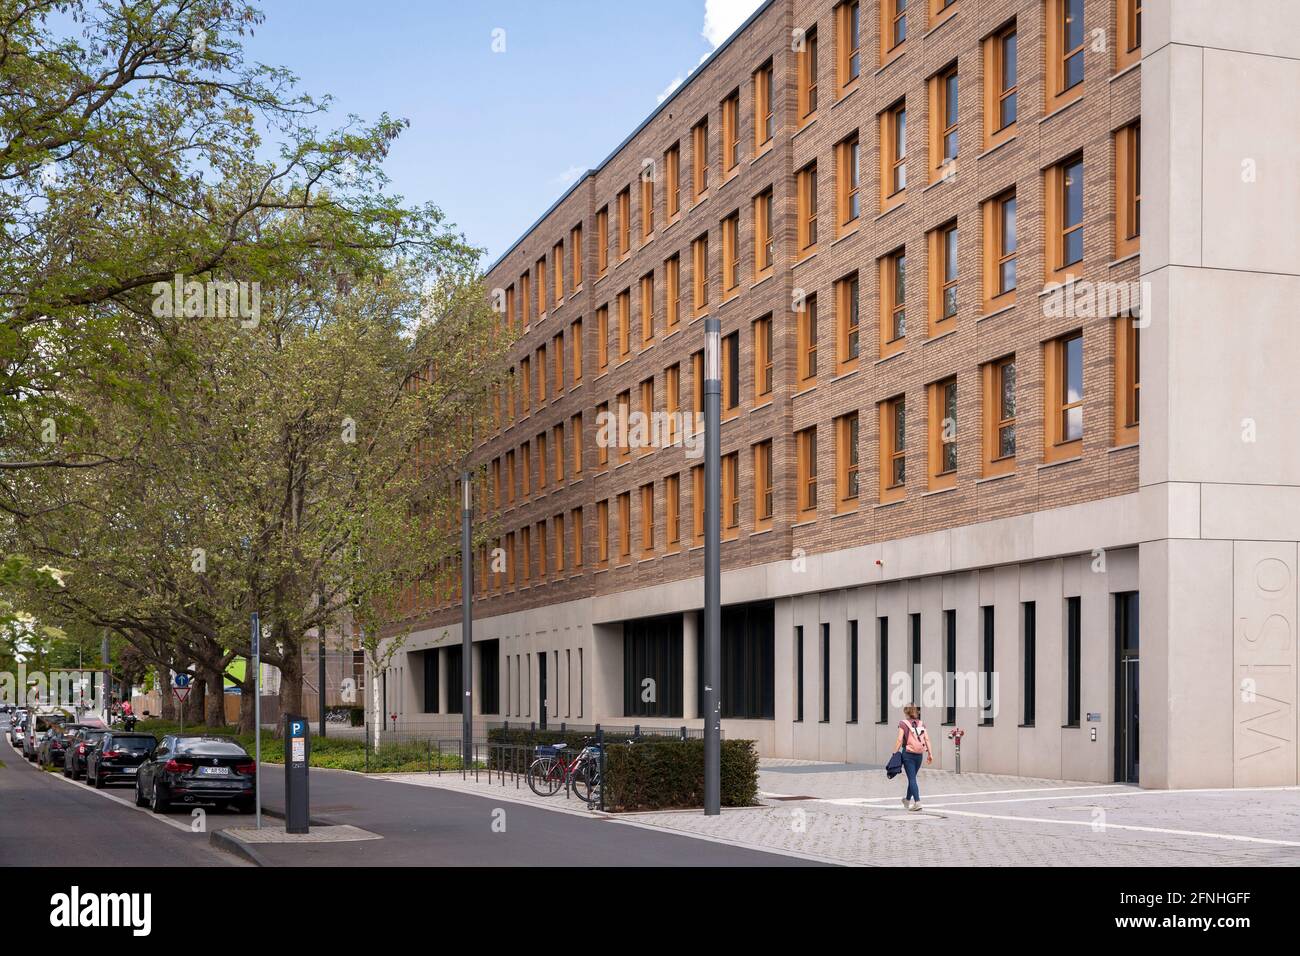 Edificio de la Facultad de Administración, Economía y Ciencias Sociales de la Universidad de Colonia, en el distrito de Lindenthal, Colonia, Alemania. Wirtschafts- Foto de stock